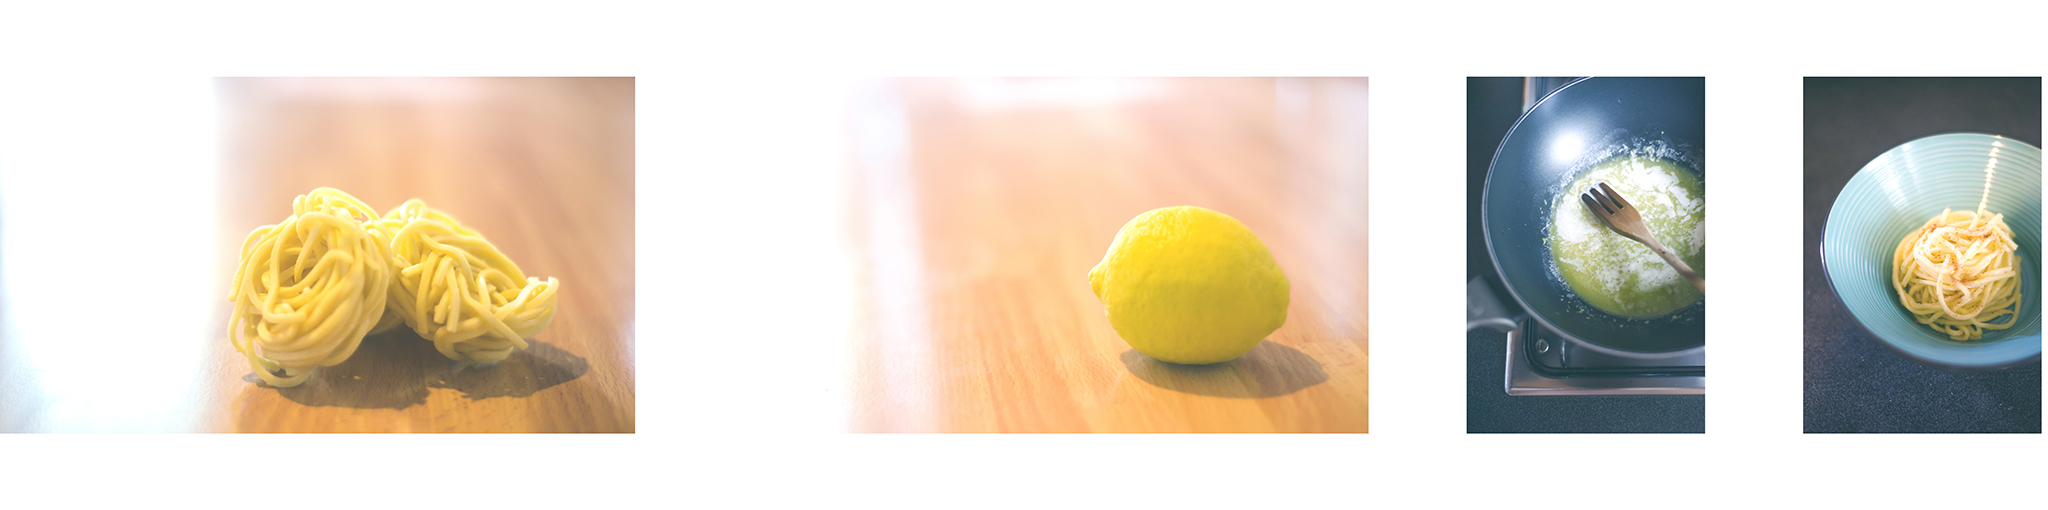 Lemon squash with sage and nutmeg!...